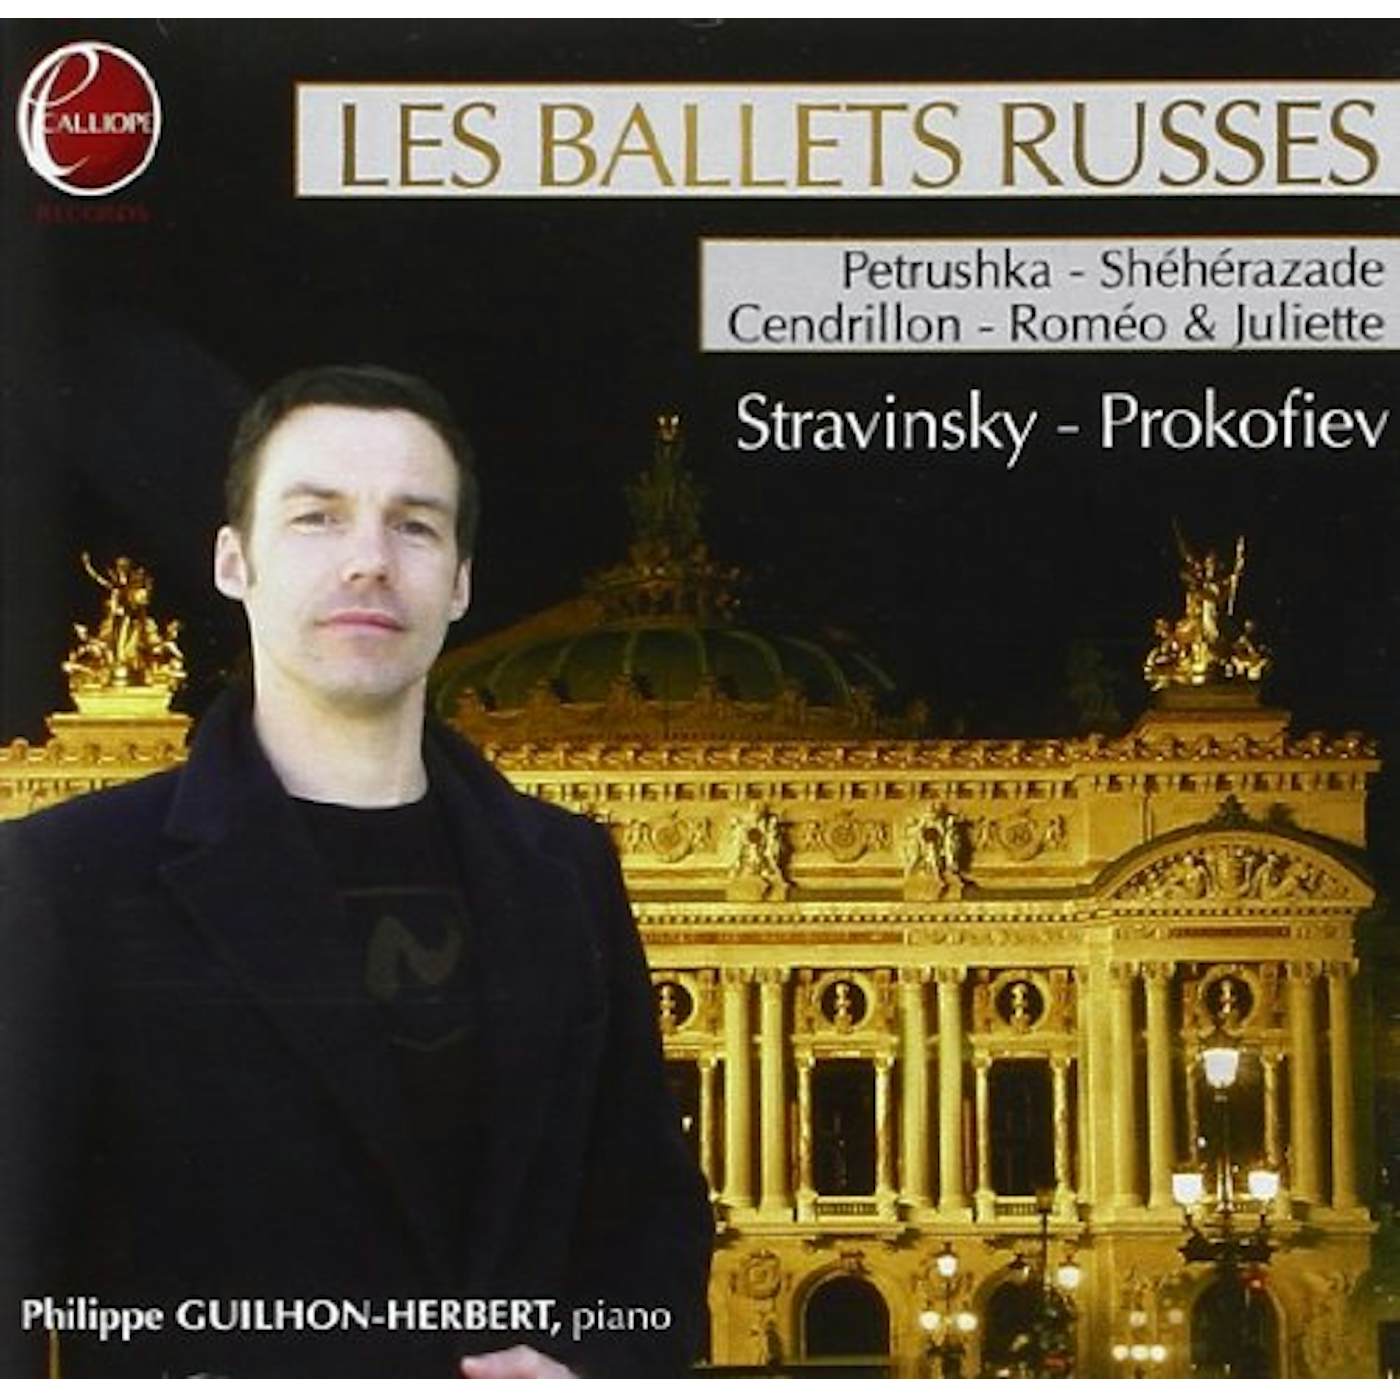 Rimsky-Korsakov RUSSIAN BALLETS IN PARIS CD